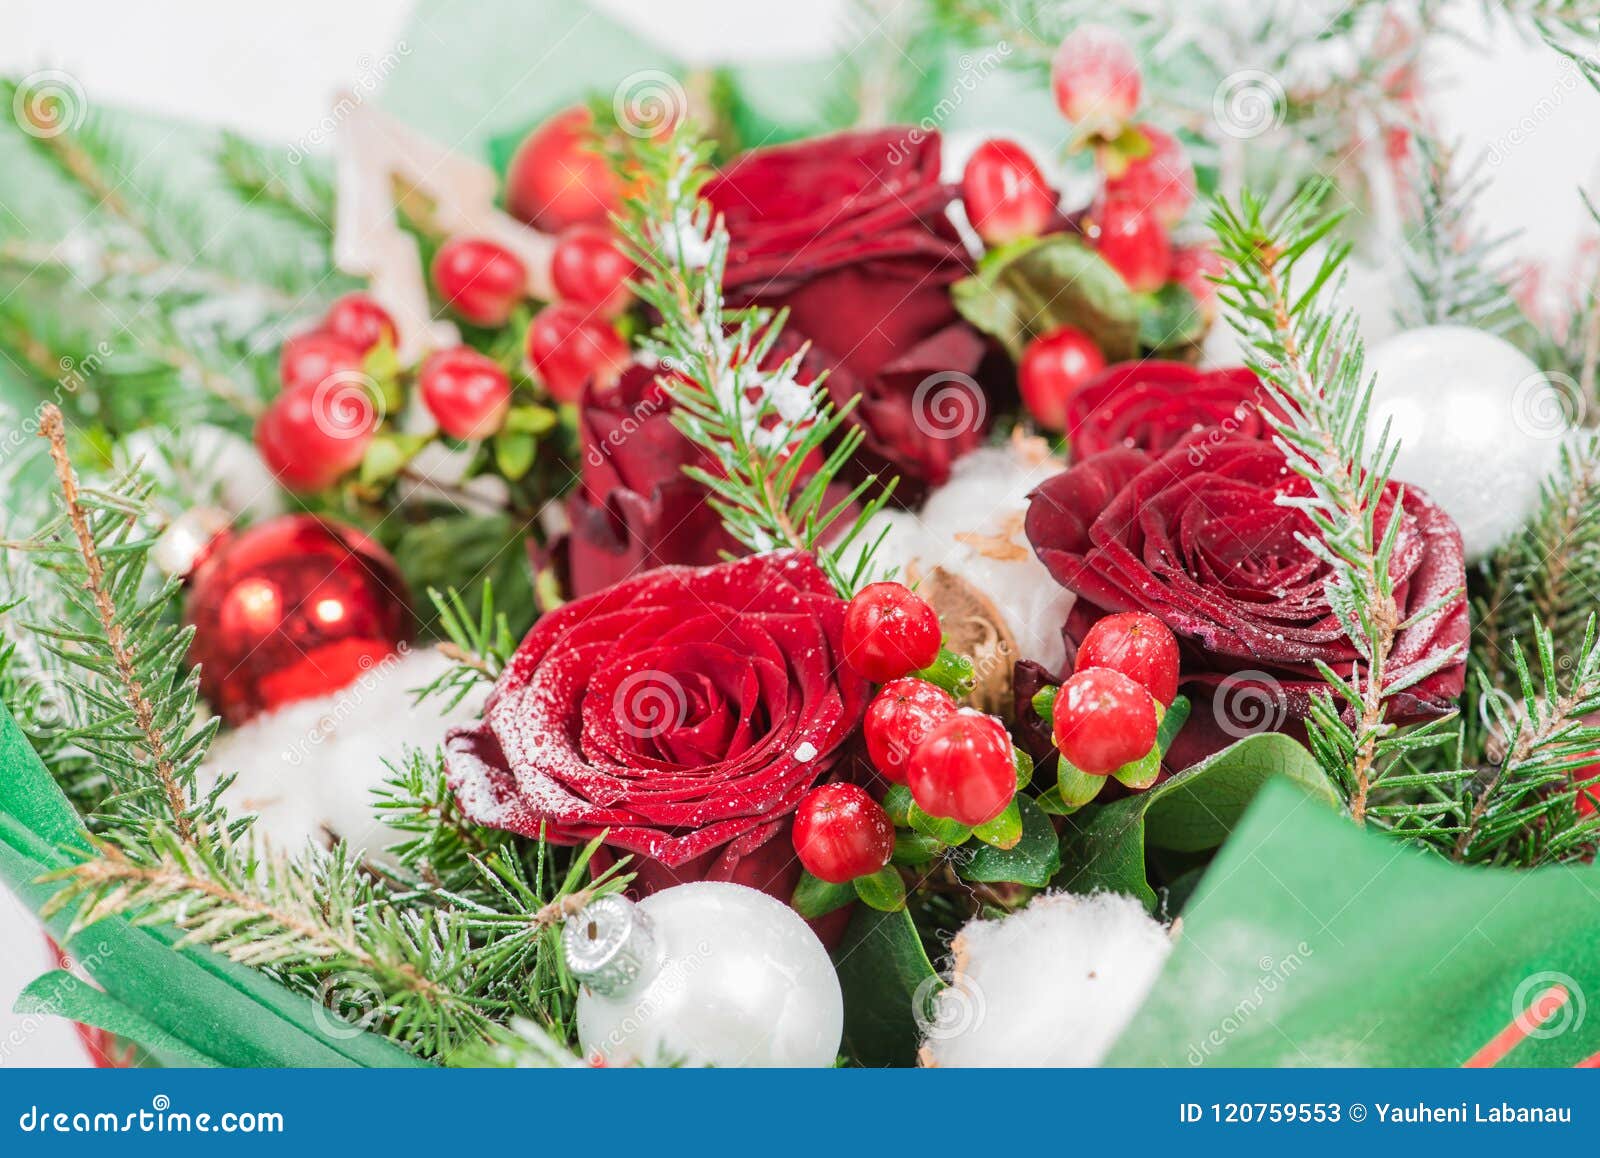 红玫瑰+平安果搭配圣诞装饰物【圣诞节平安果小花束】_圣诞鲜花_按用途选购_溢香缘鲜花